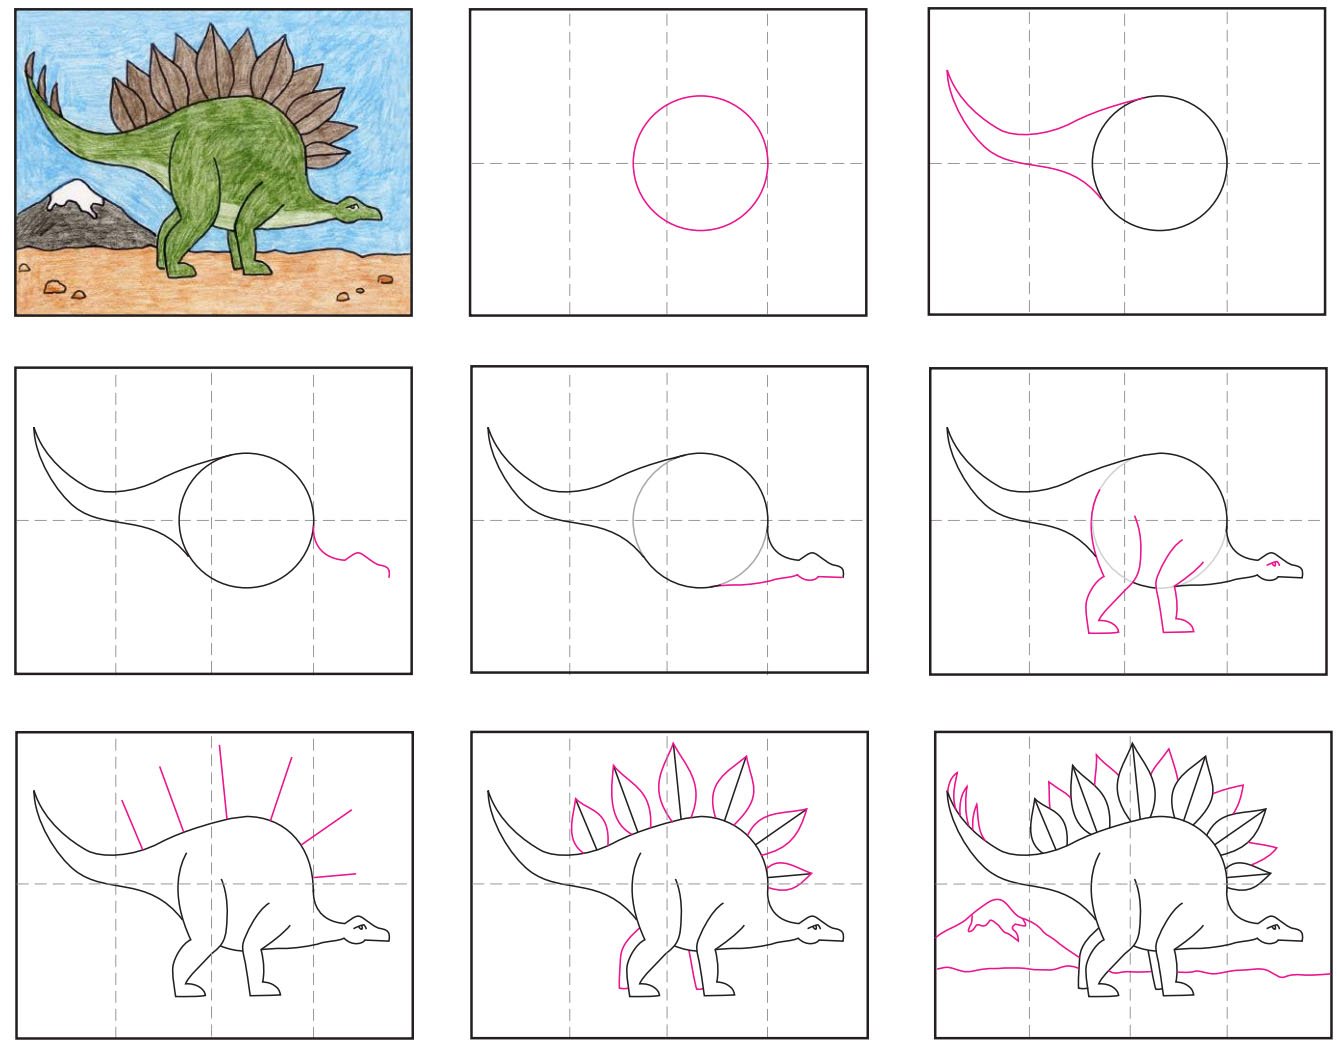 Нарисовать динозавра для детей поэтапно карандашом